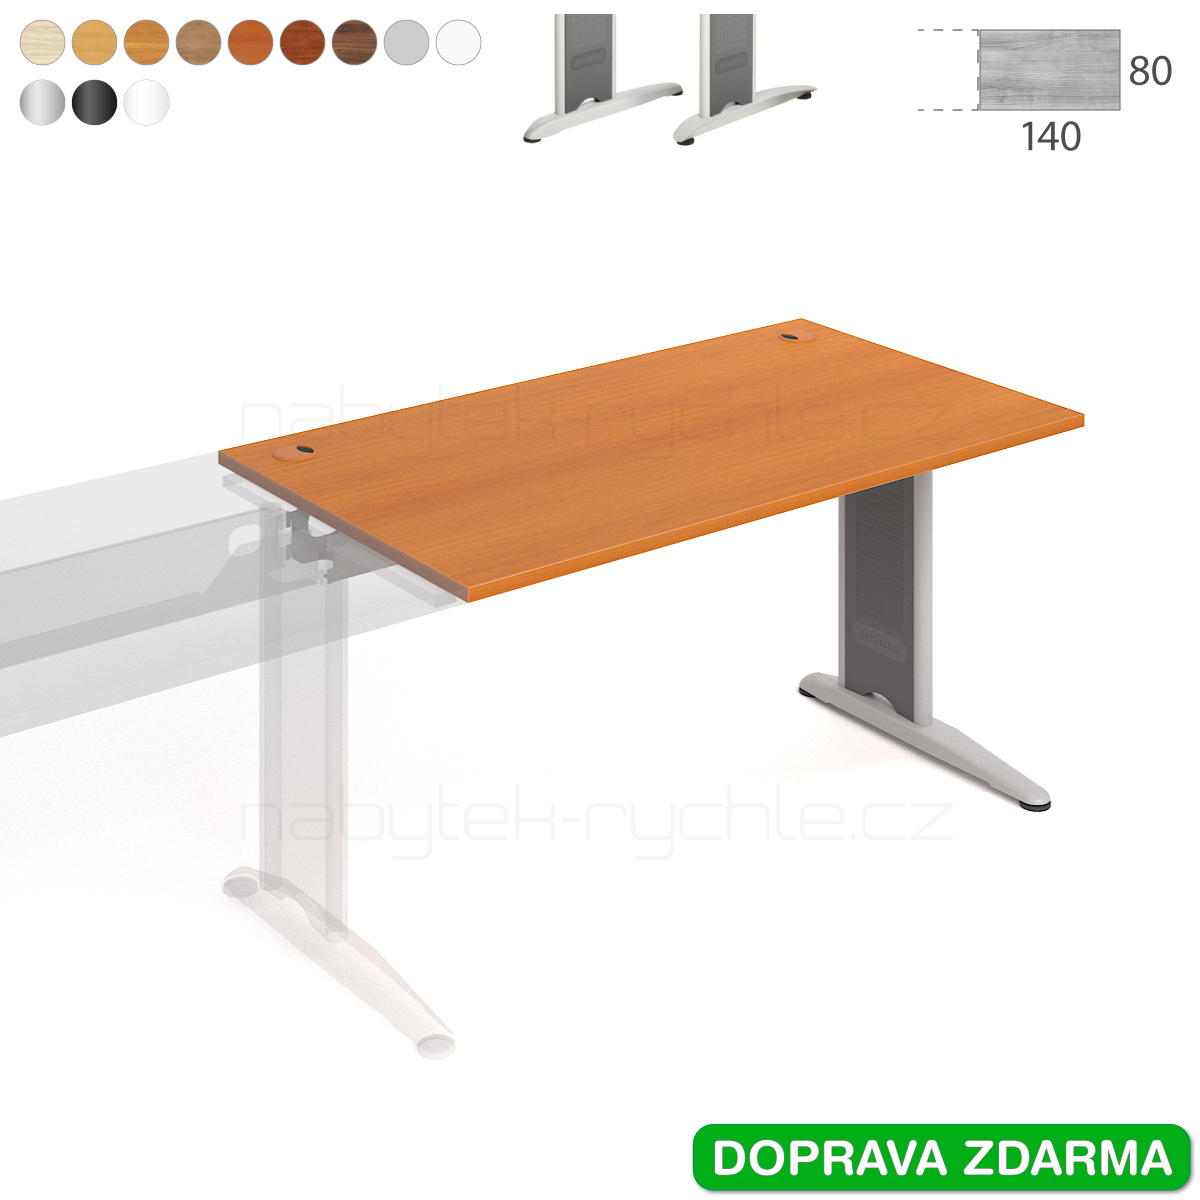 FS 1400 R Hobis Flex - Stůl 140 x 80 navazující